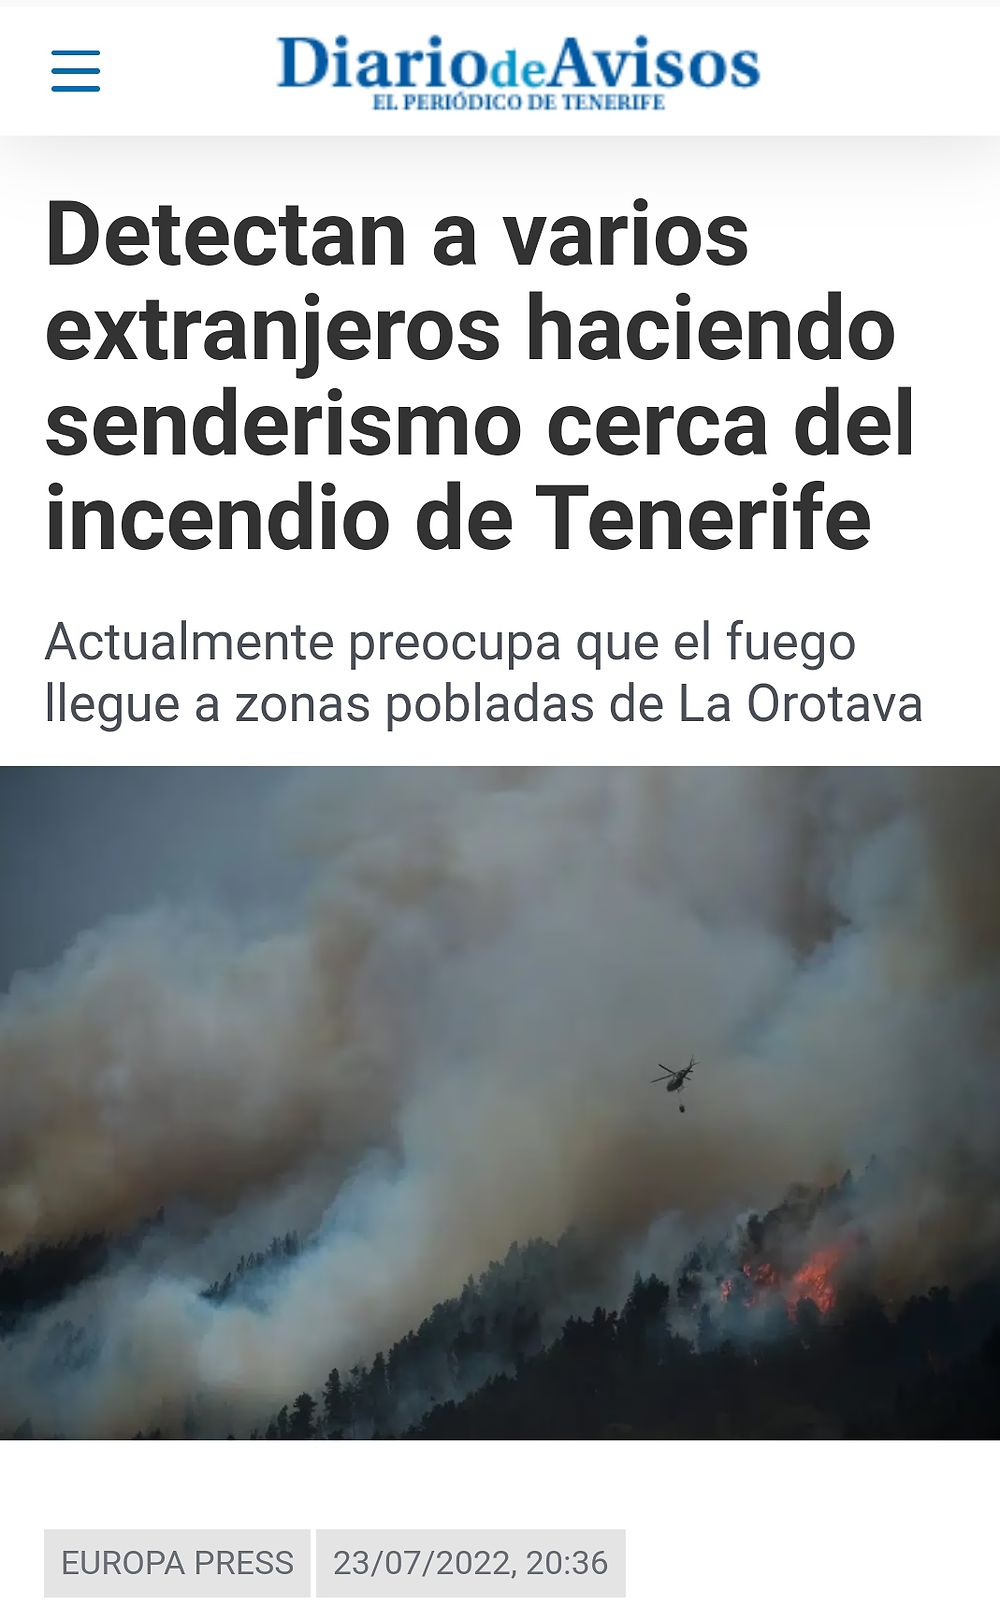 Re: Incendie en cours à Tenerife + avis fortes chaleurs - France (Tenerife)